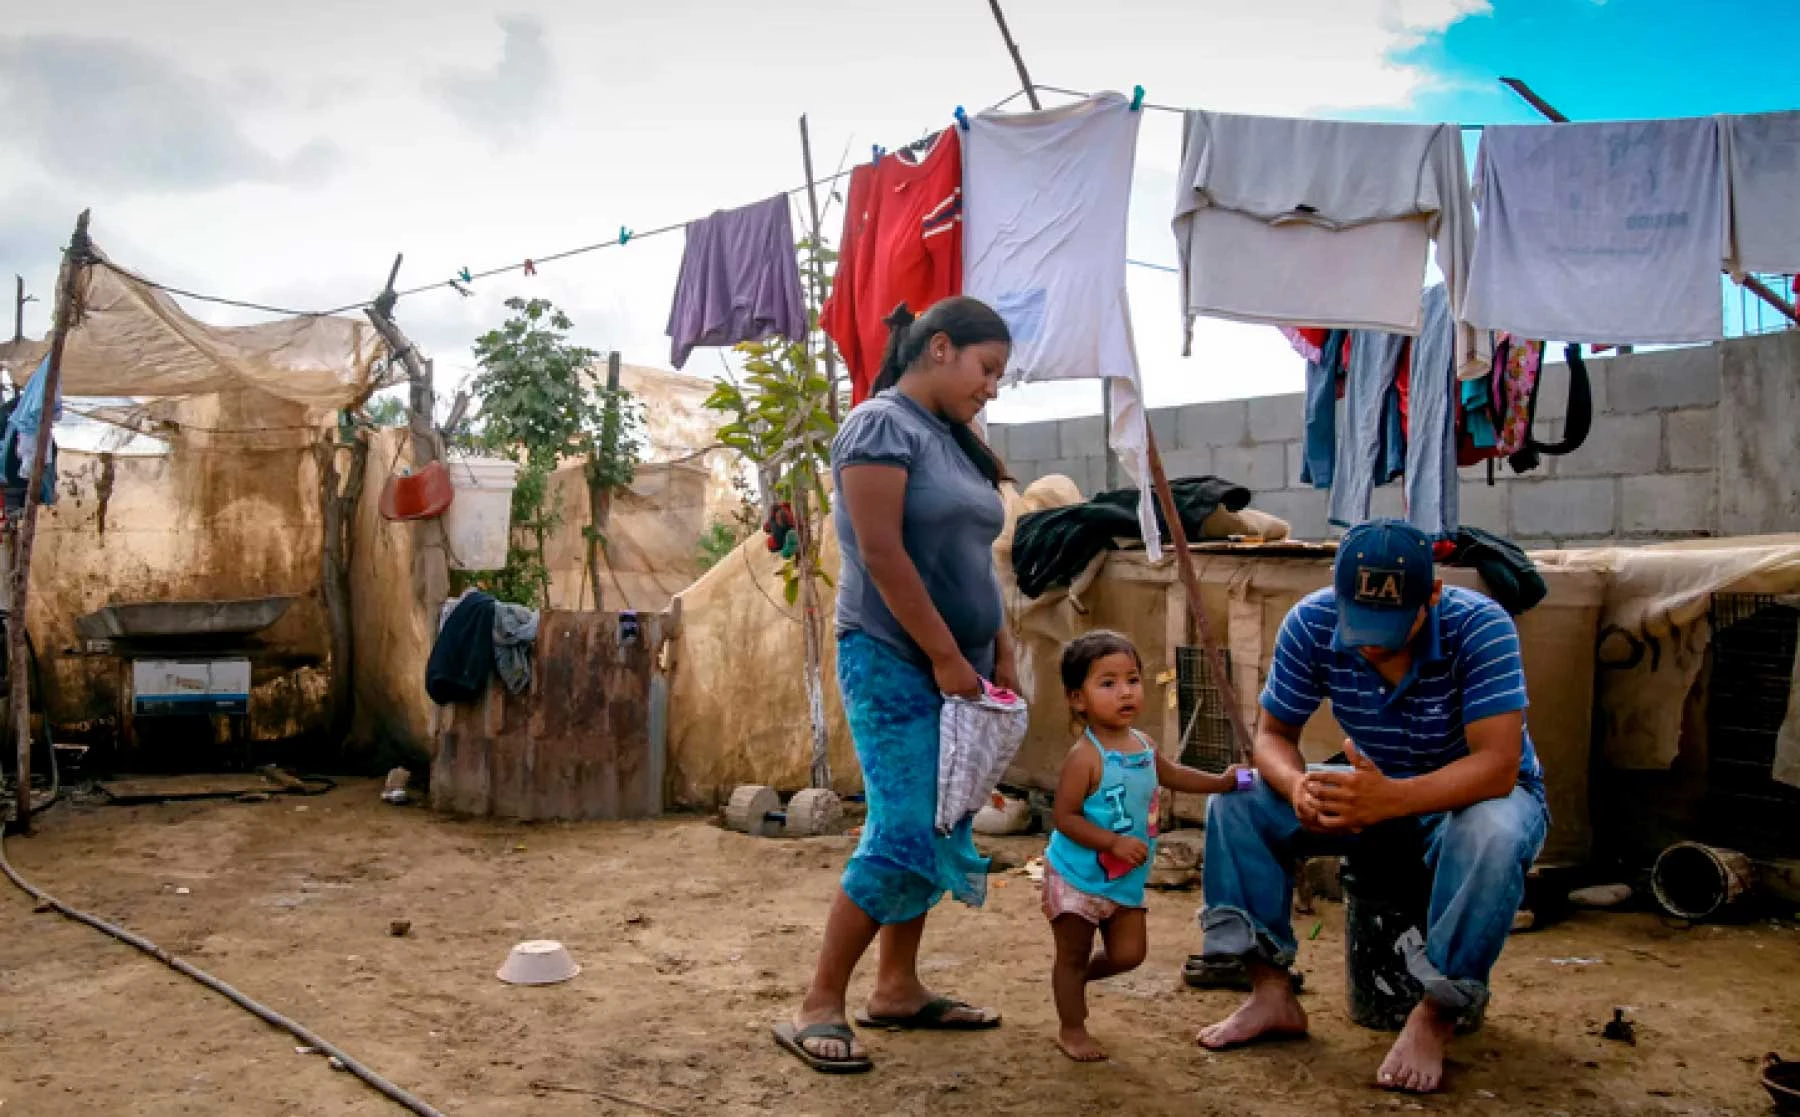 El 74% de mexicanos que nace en pobreza, morirán en las mismas condiciones